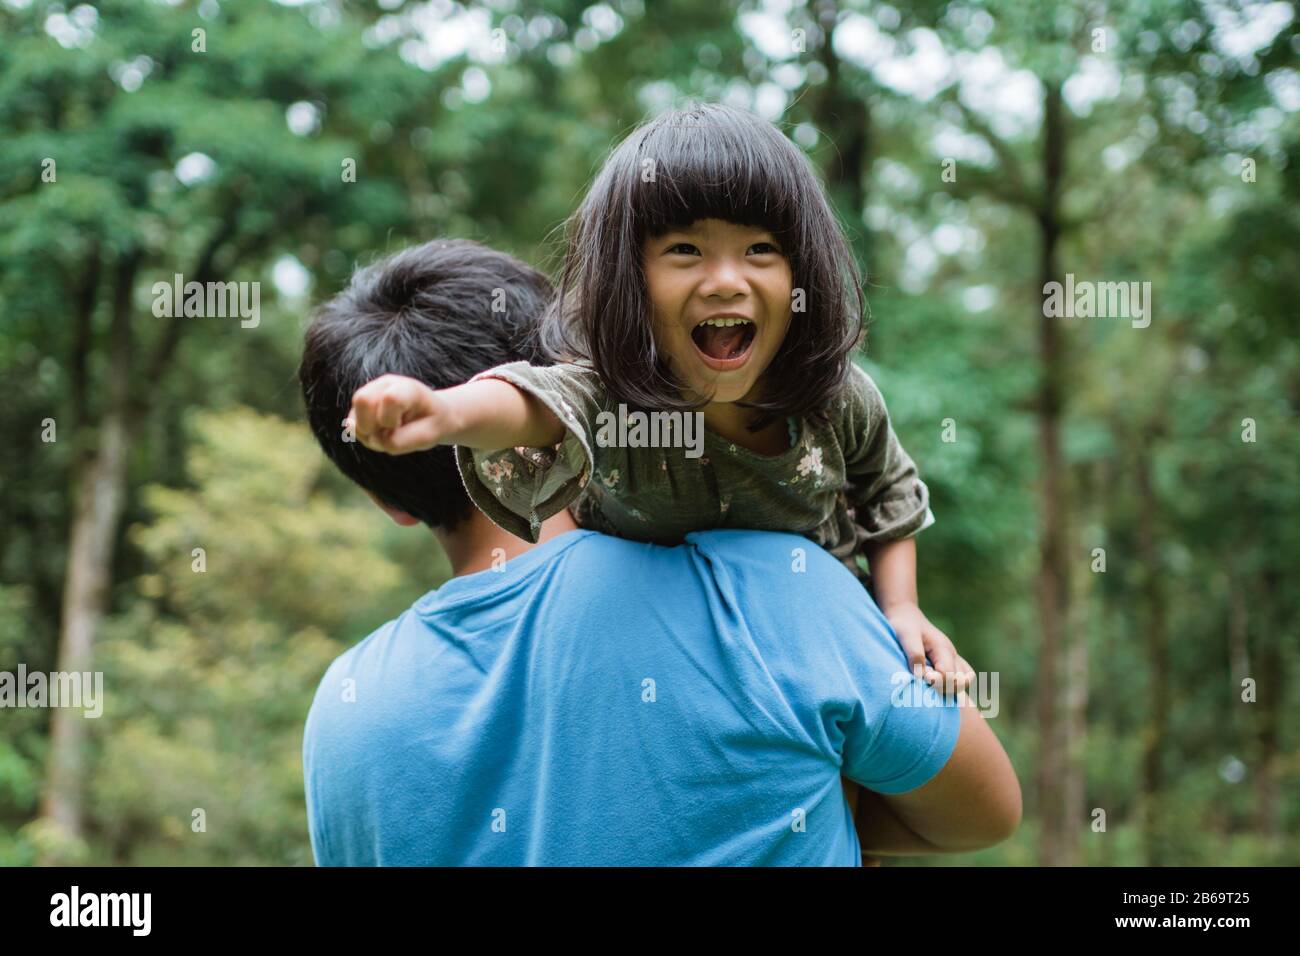 la niña se rió alegremente cuando fue llevada sobre el hombro de su padre mientras jugaba en el parque Foto de stock